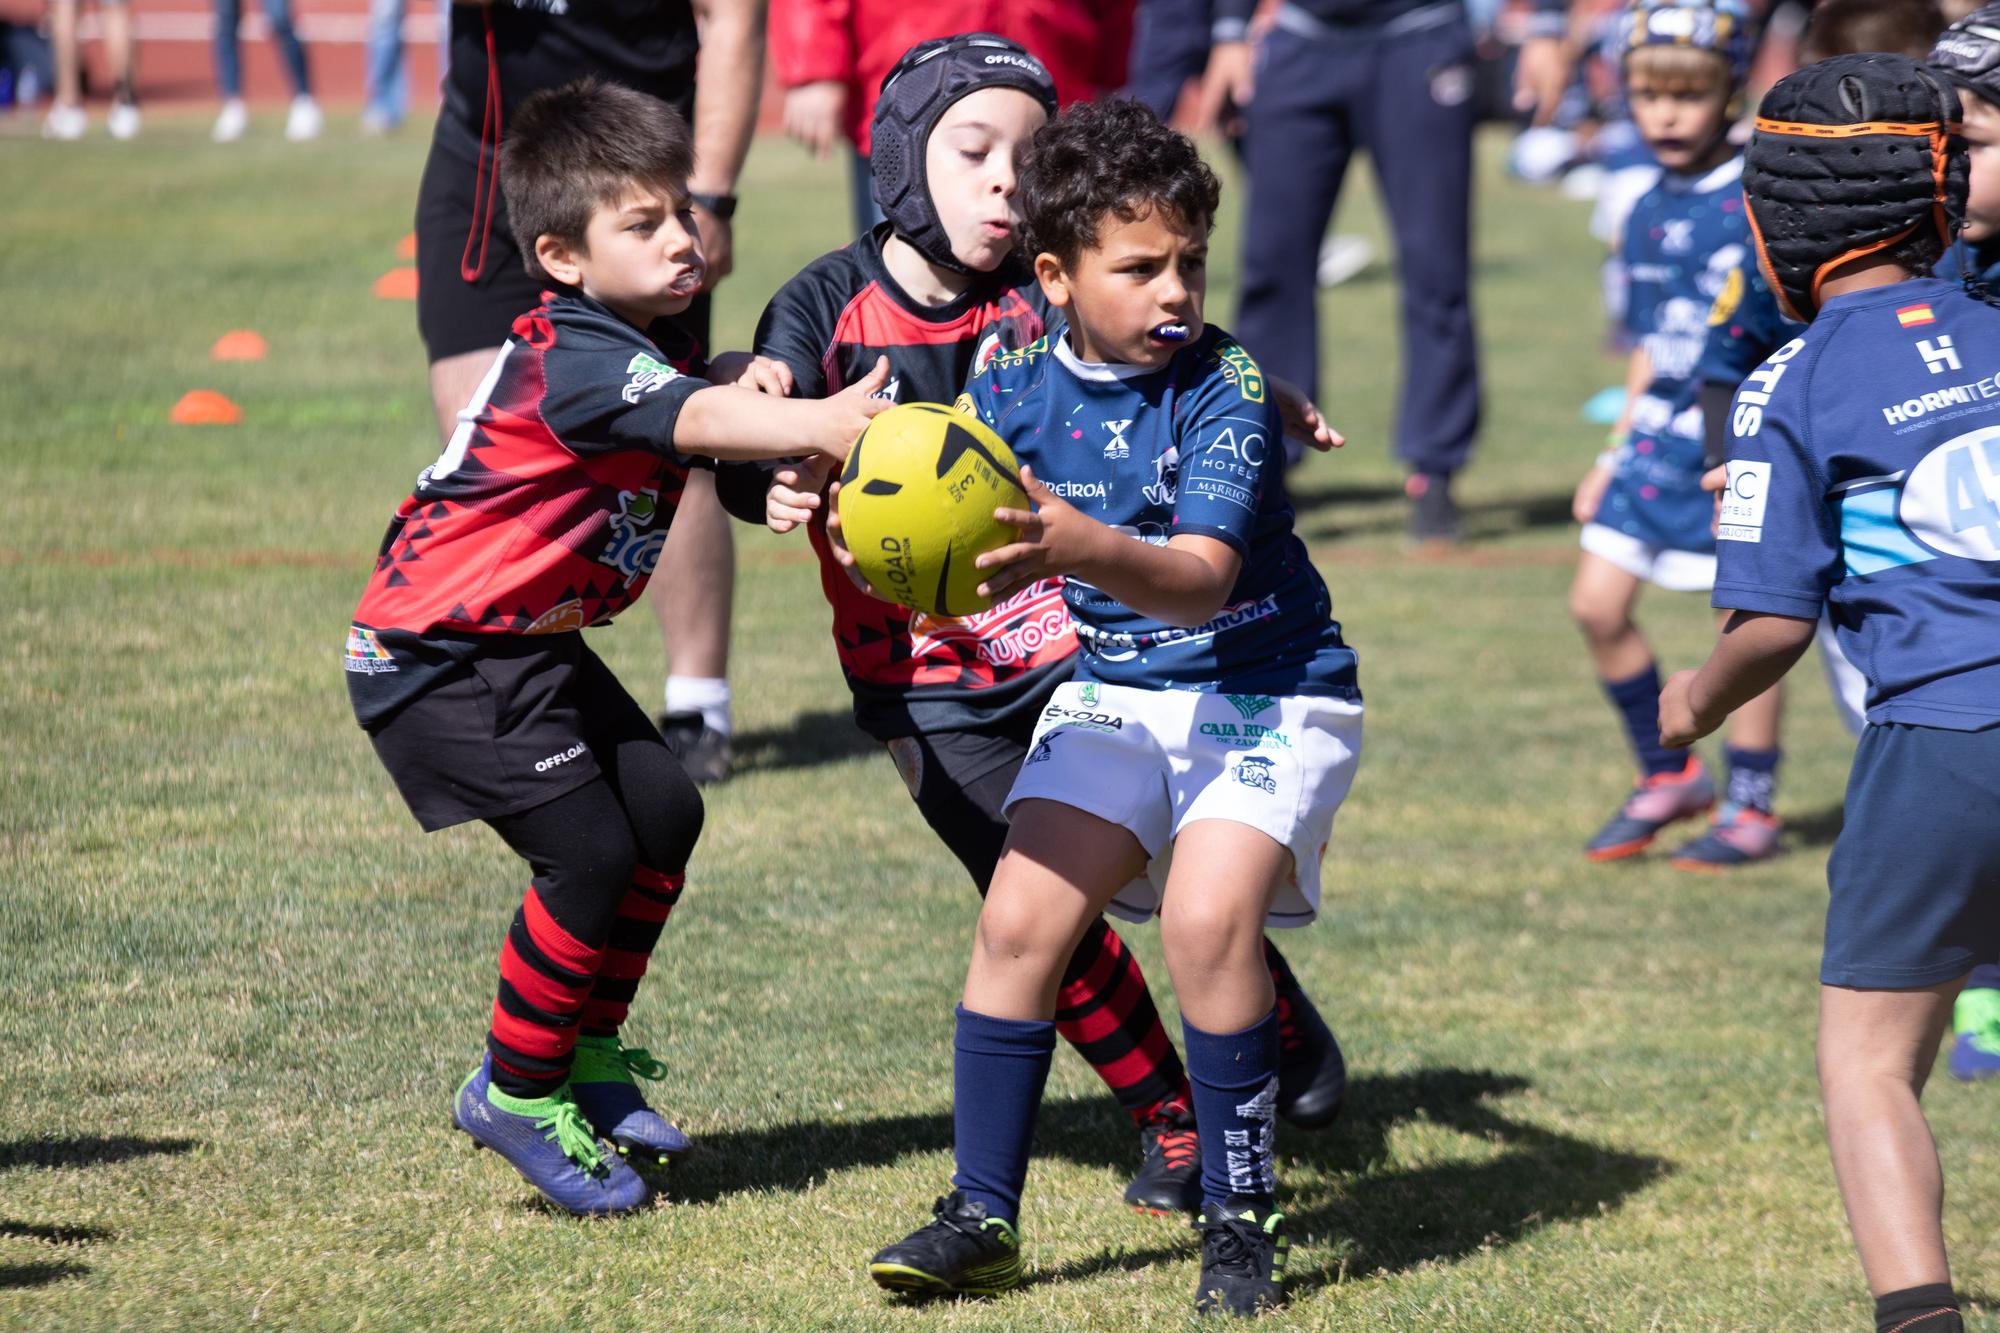 GALERÍA | El rugby más puro brilla con la "II Jornada de canteras Ciudad de Zamora"